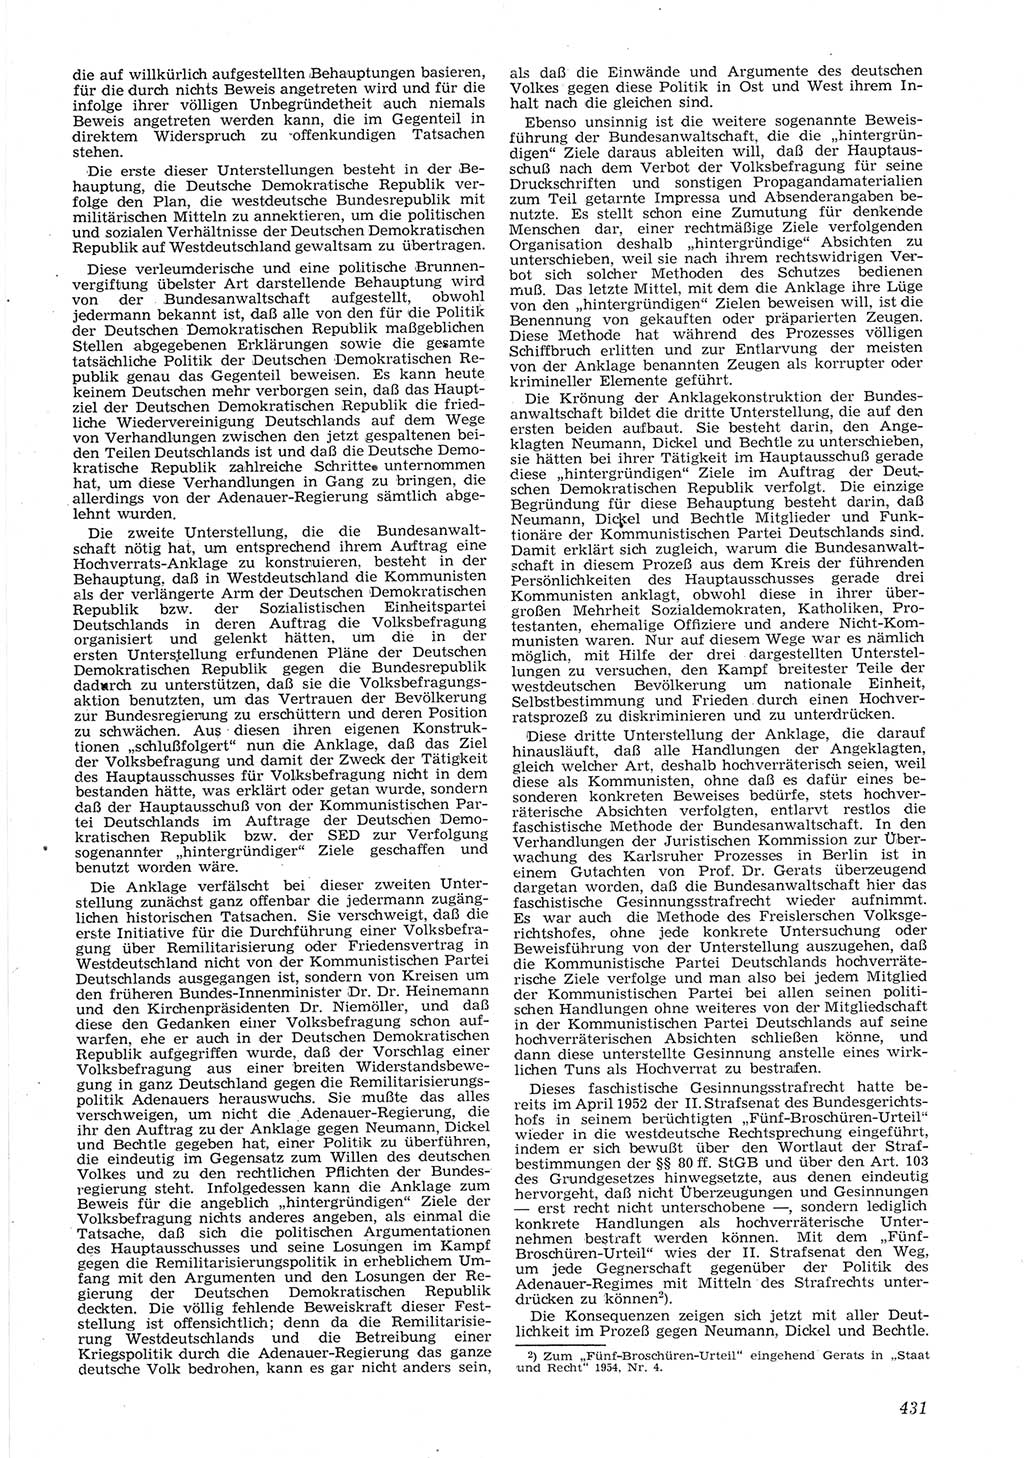 Neue Justiz (NJ), Zeitschrift für Recht und Rechtswissenschaft [Deutsche Demokratische Republik (DDR)], 8. Jahrgang 1954, Seite 431 (NJ DDR 1954, S. 431)